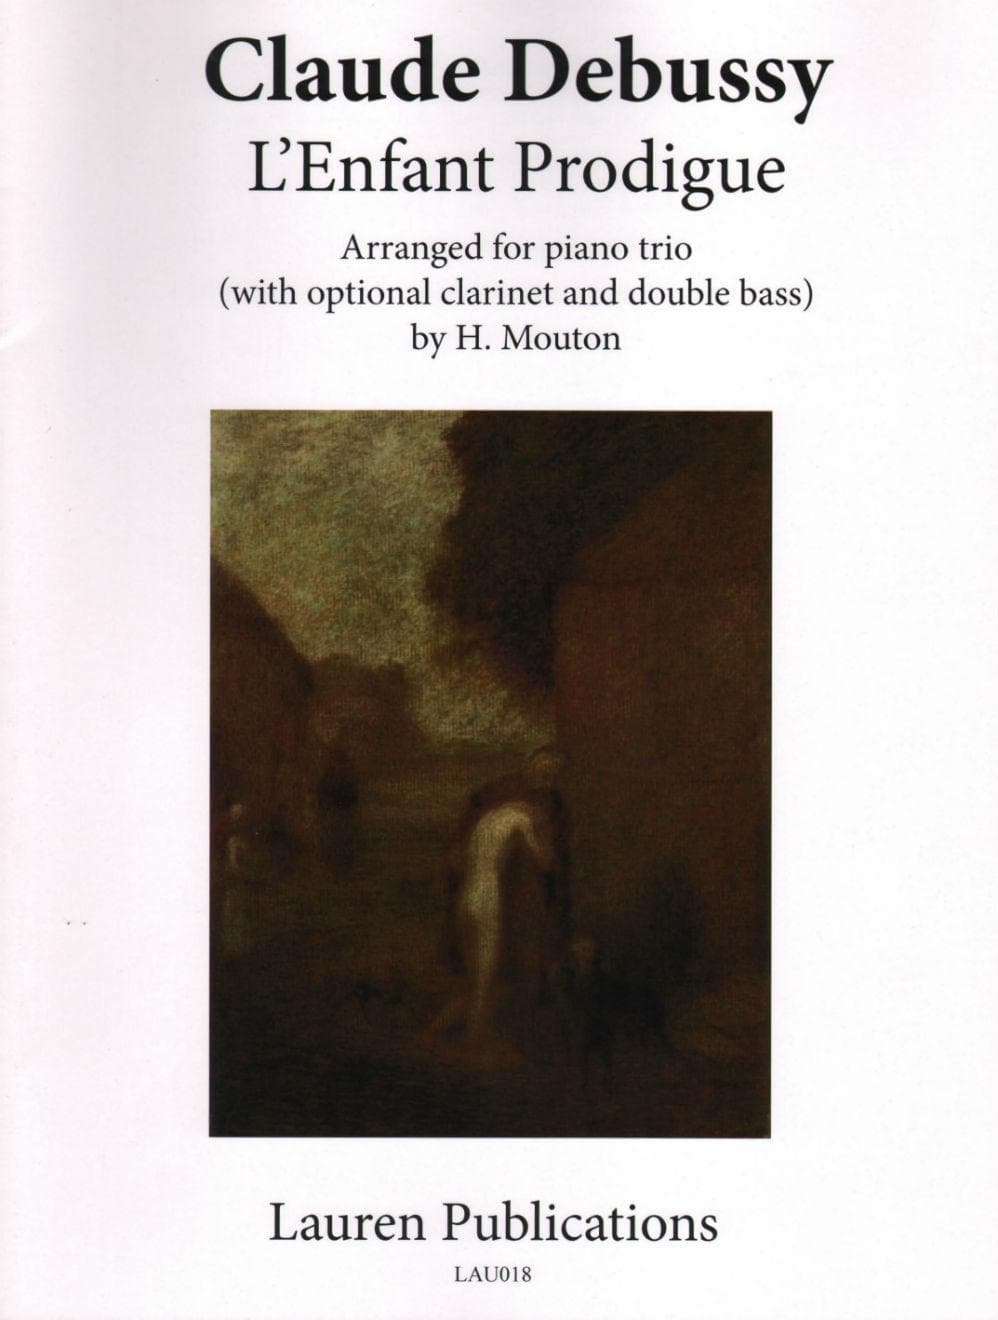 Debussy, Claude - L'Enfant Prodigue - Piano trio - Lauren Publications